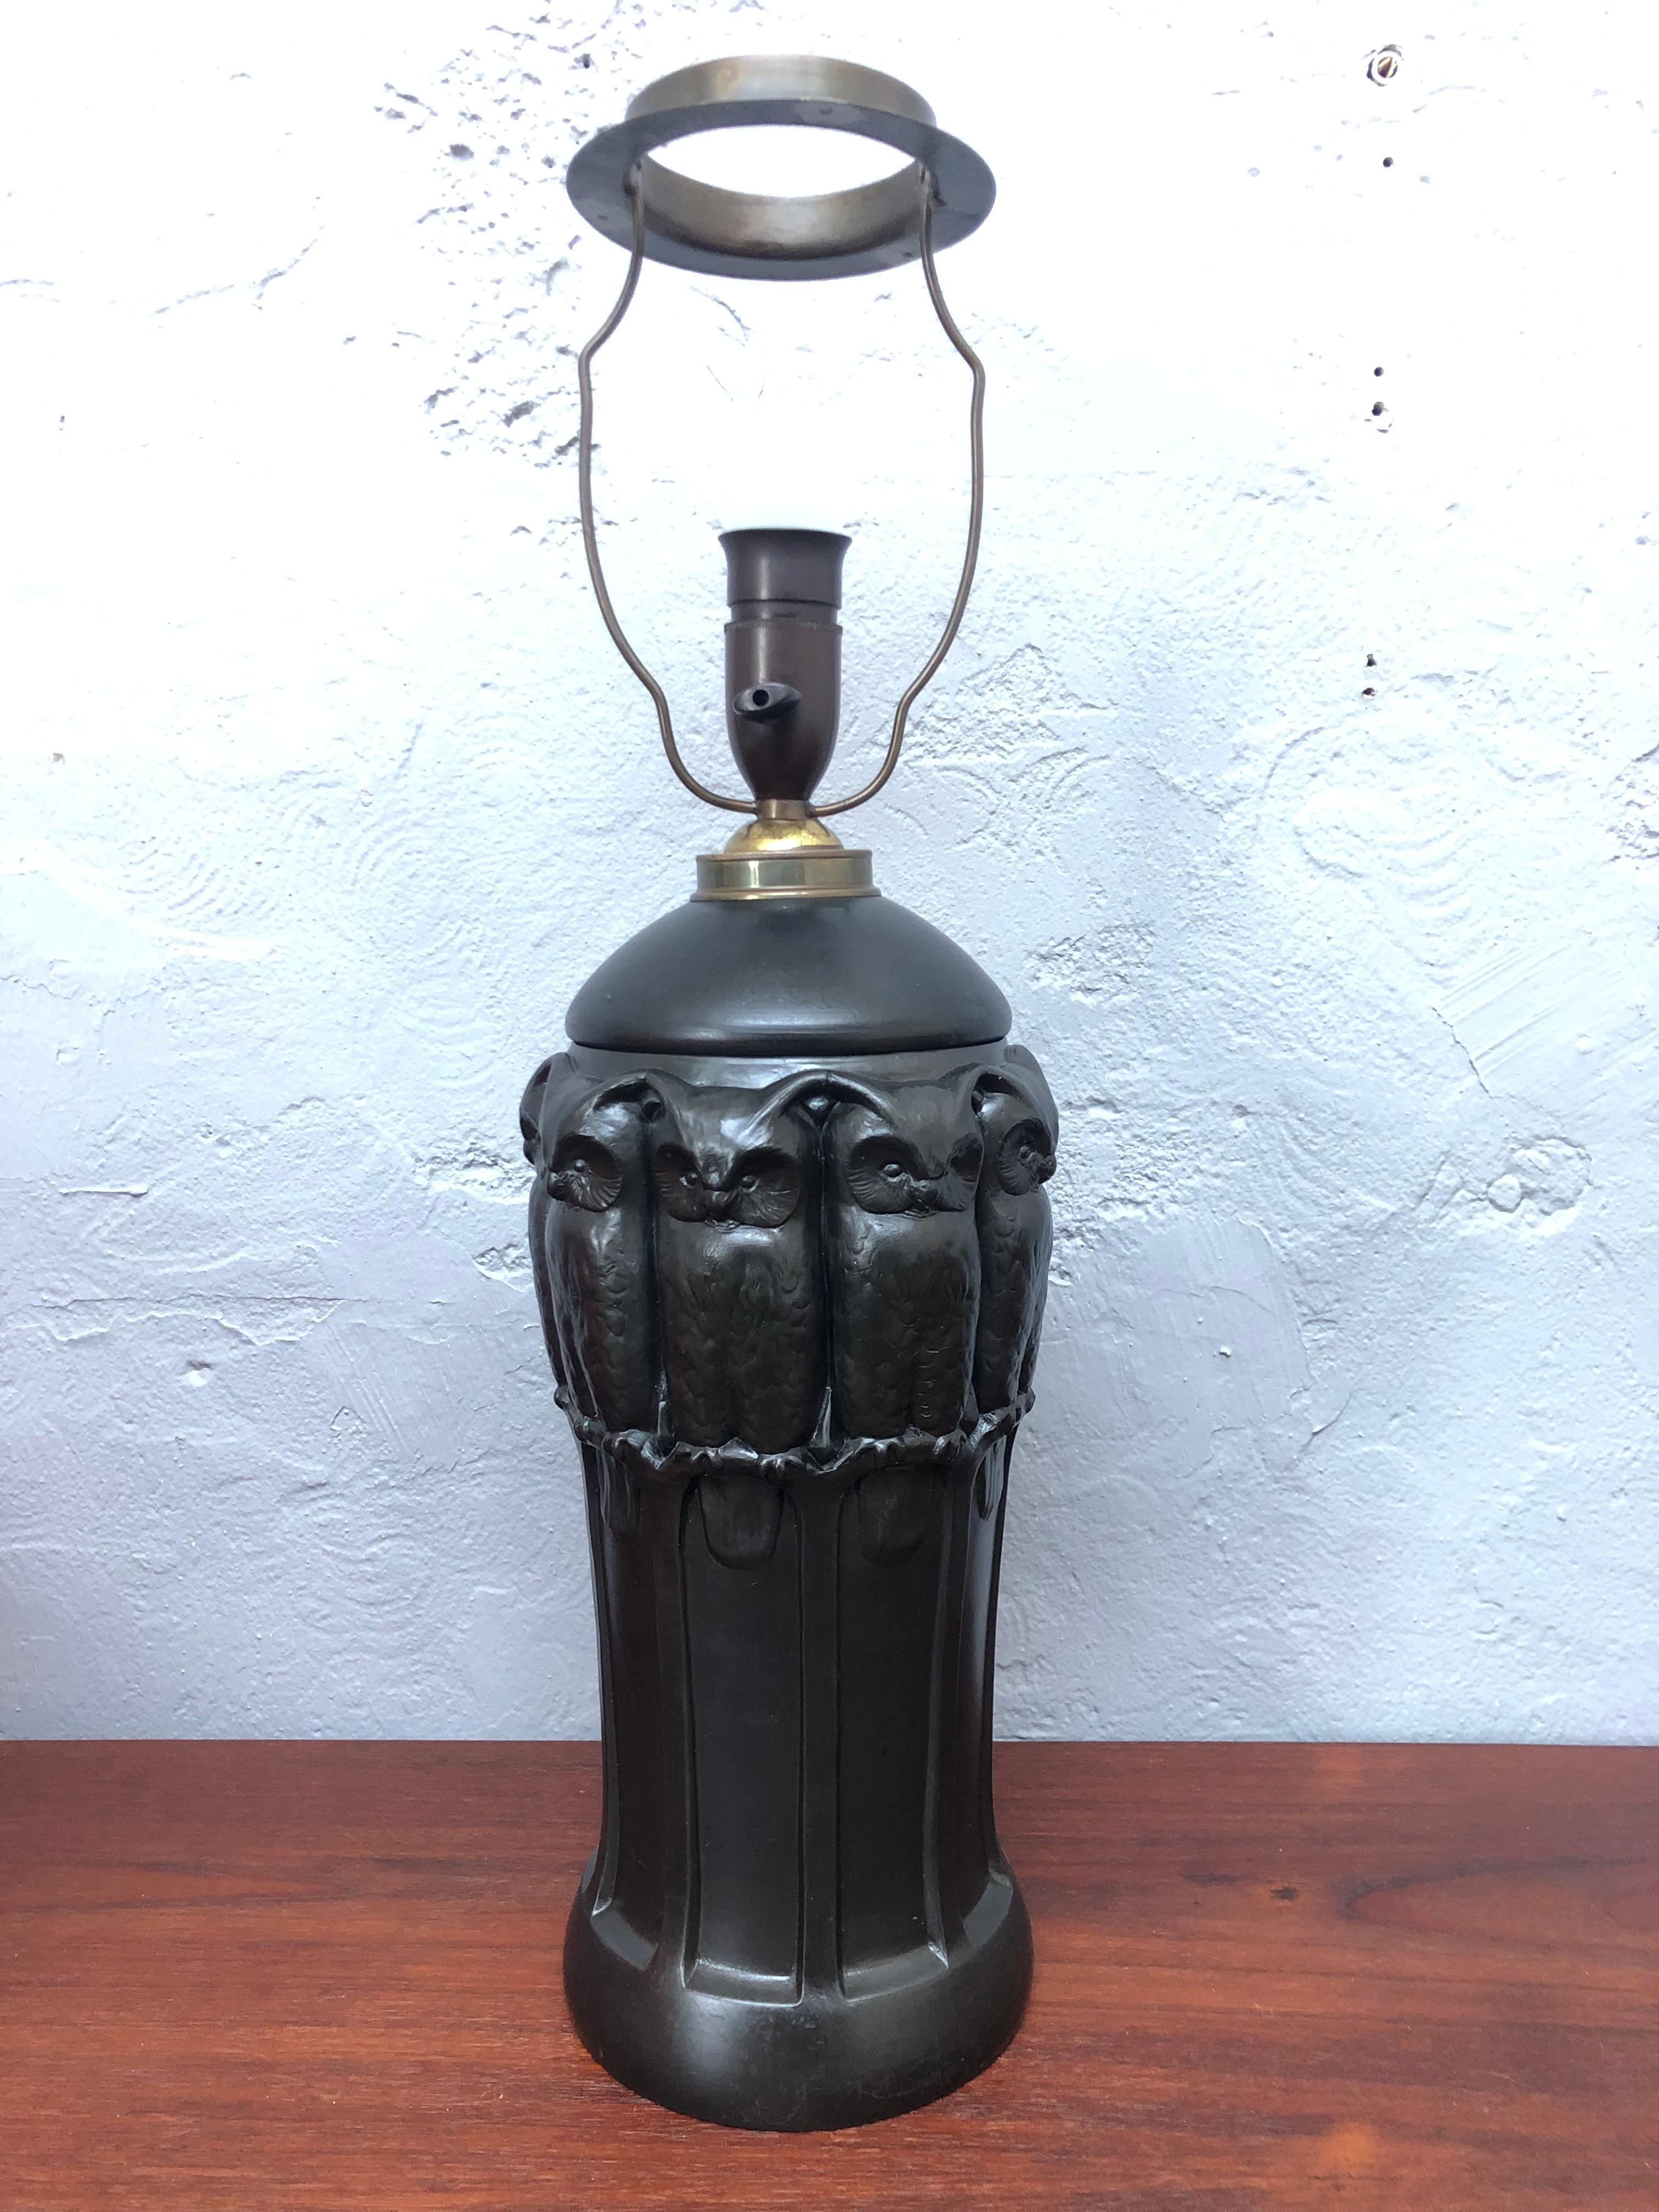 Une étonnante lampe de table iconique en poterie noire avec des hiboux par Lauritz Adolph Hjorth de Bornholm au Danemark. 
La lampe a été recâblée avec un câble en tissu torsadé noir et isolée à l'endroit où elle passe dans le collier en laiton.